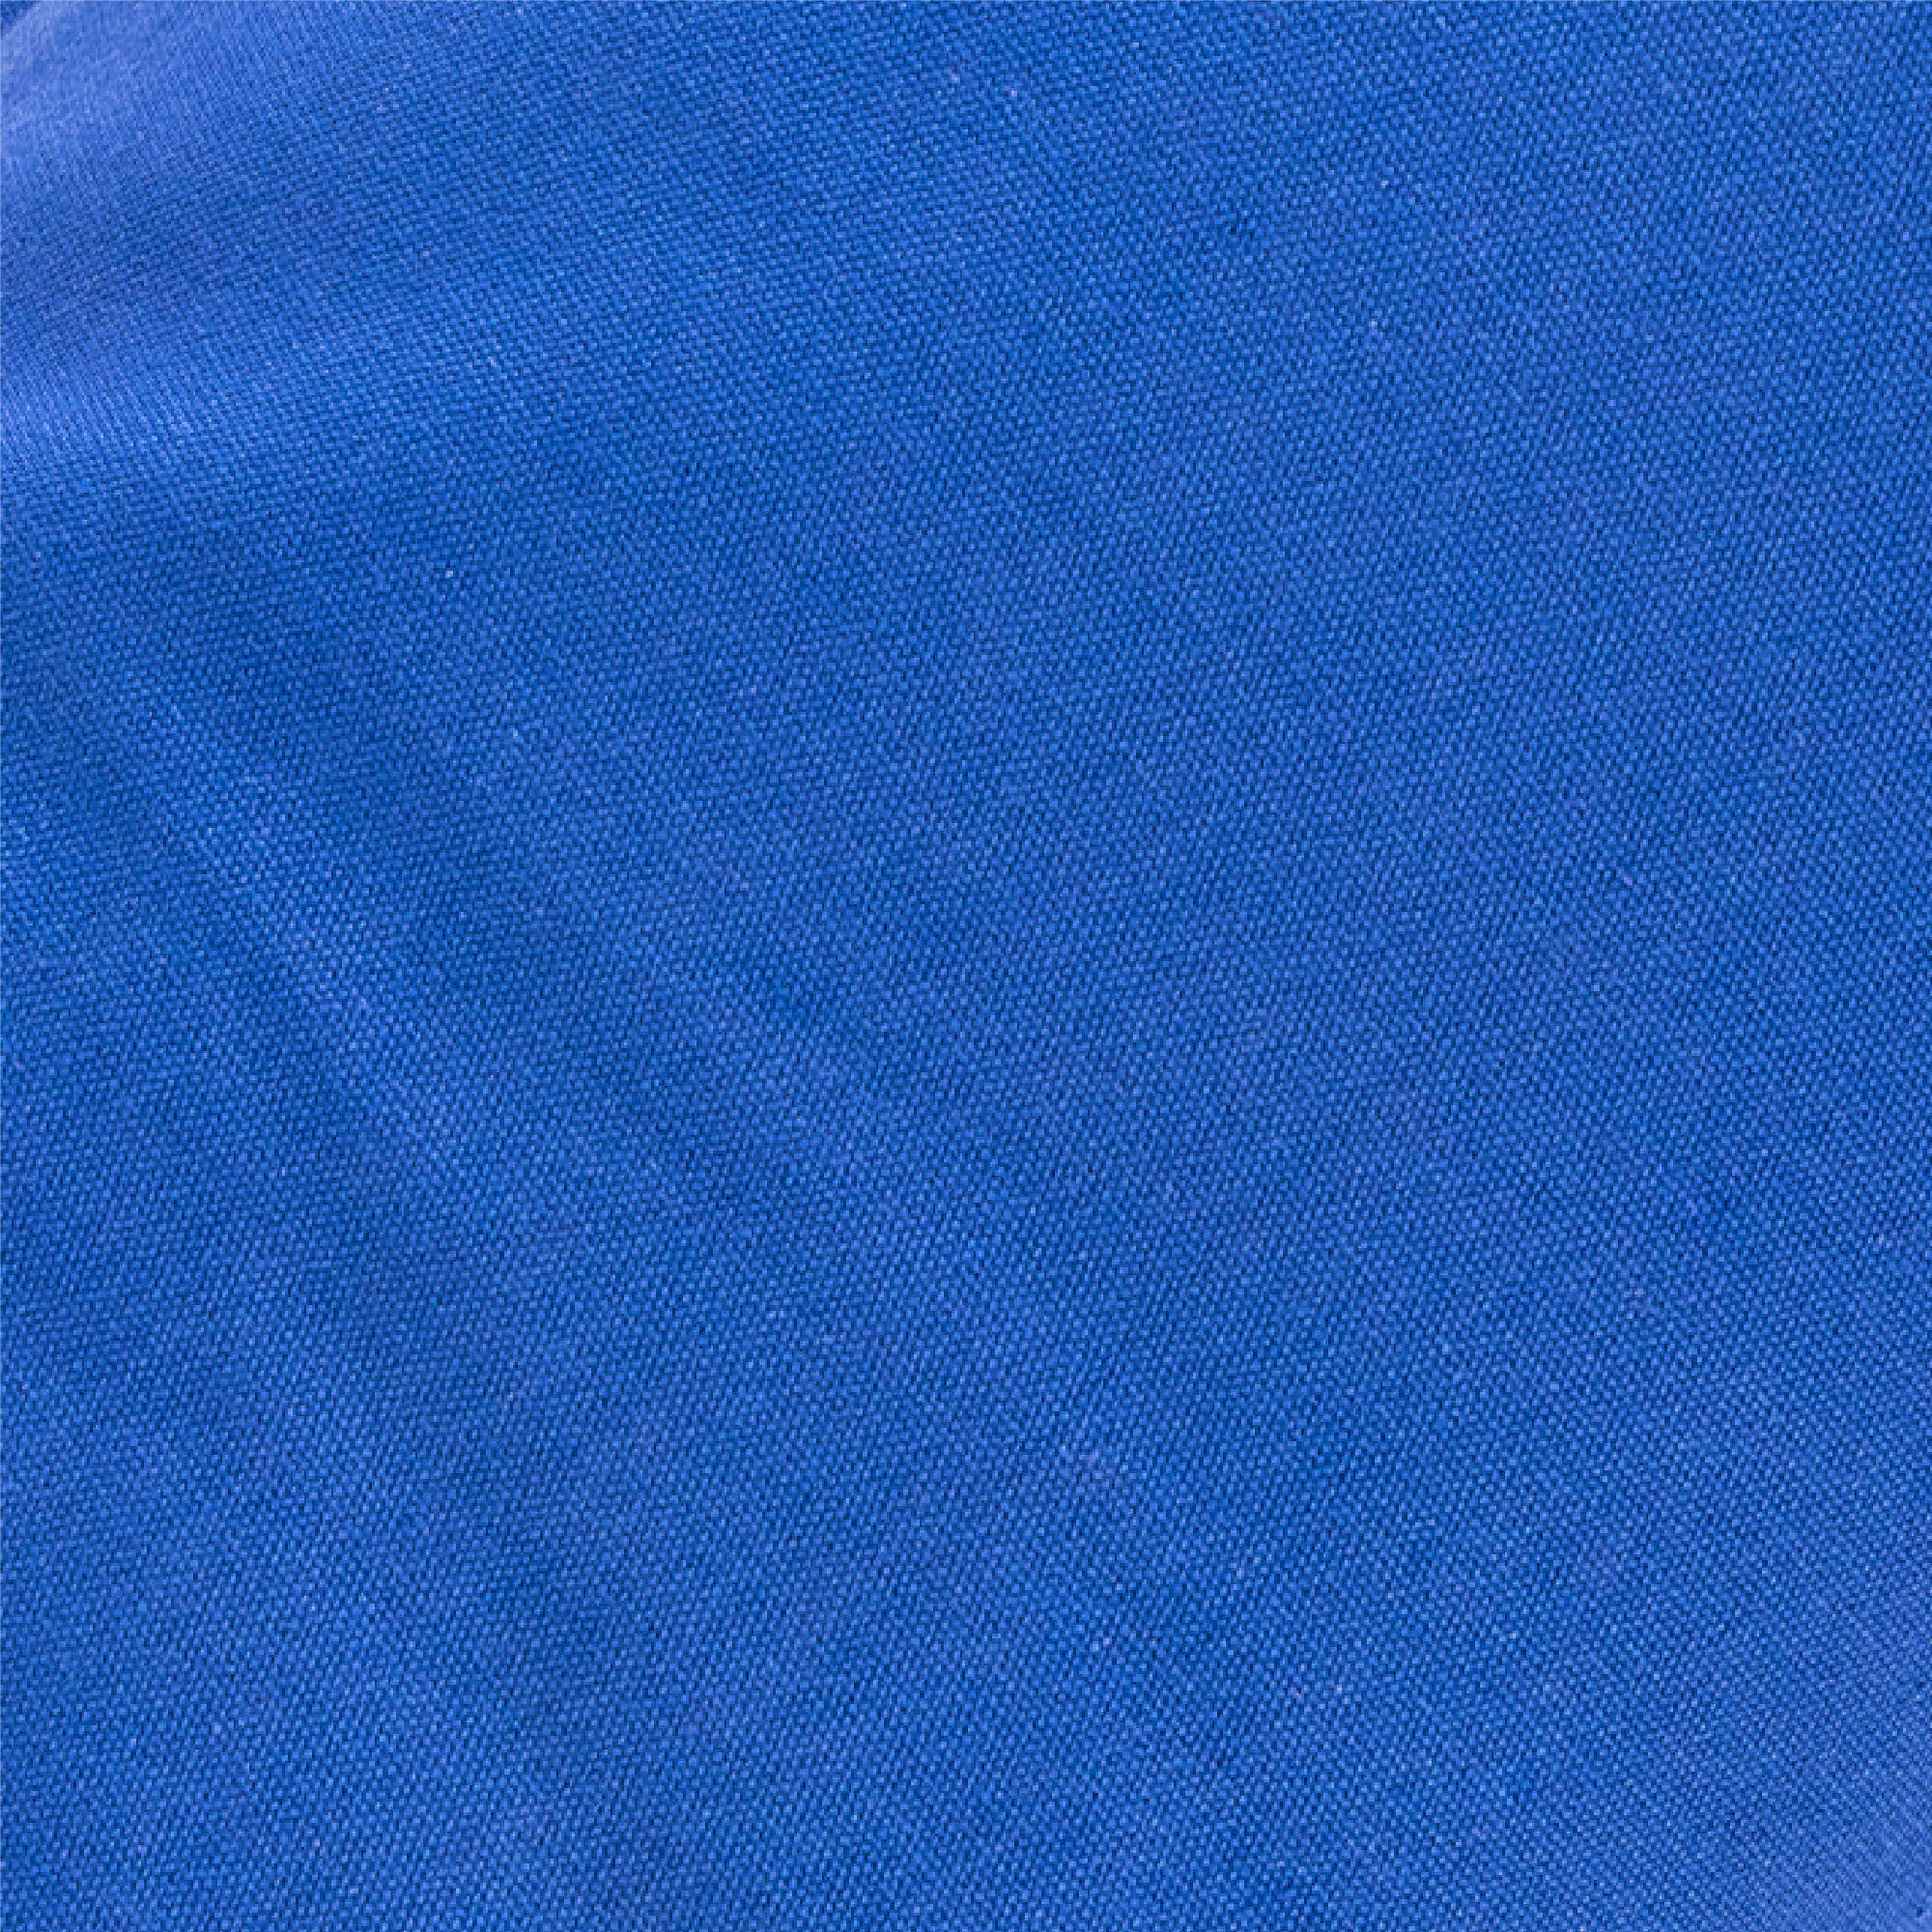 Myga Buckwheat Support Bolster Pillow - Blue 7/8